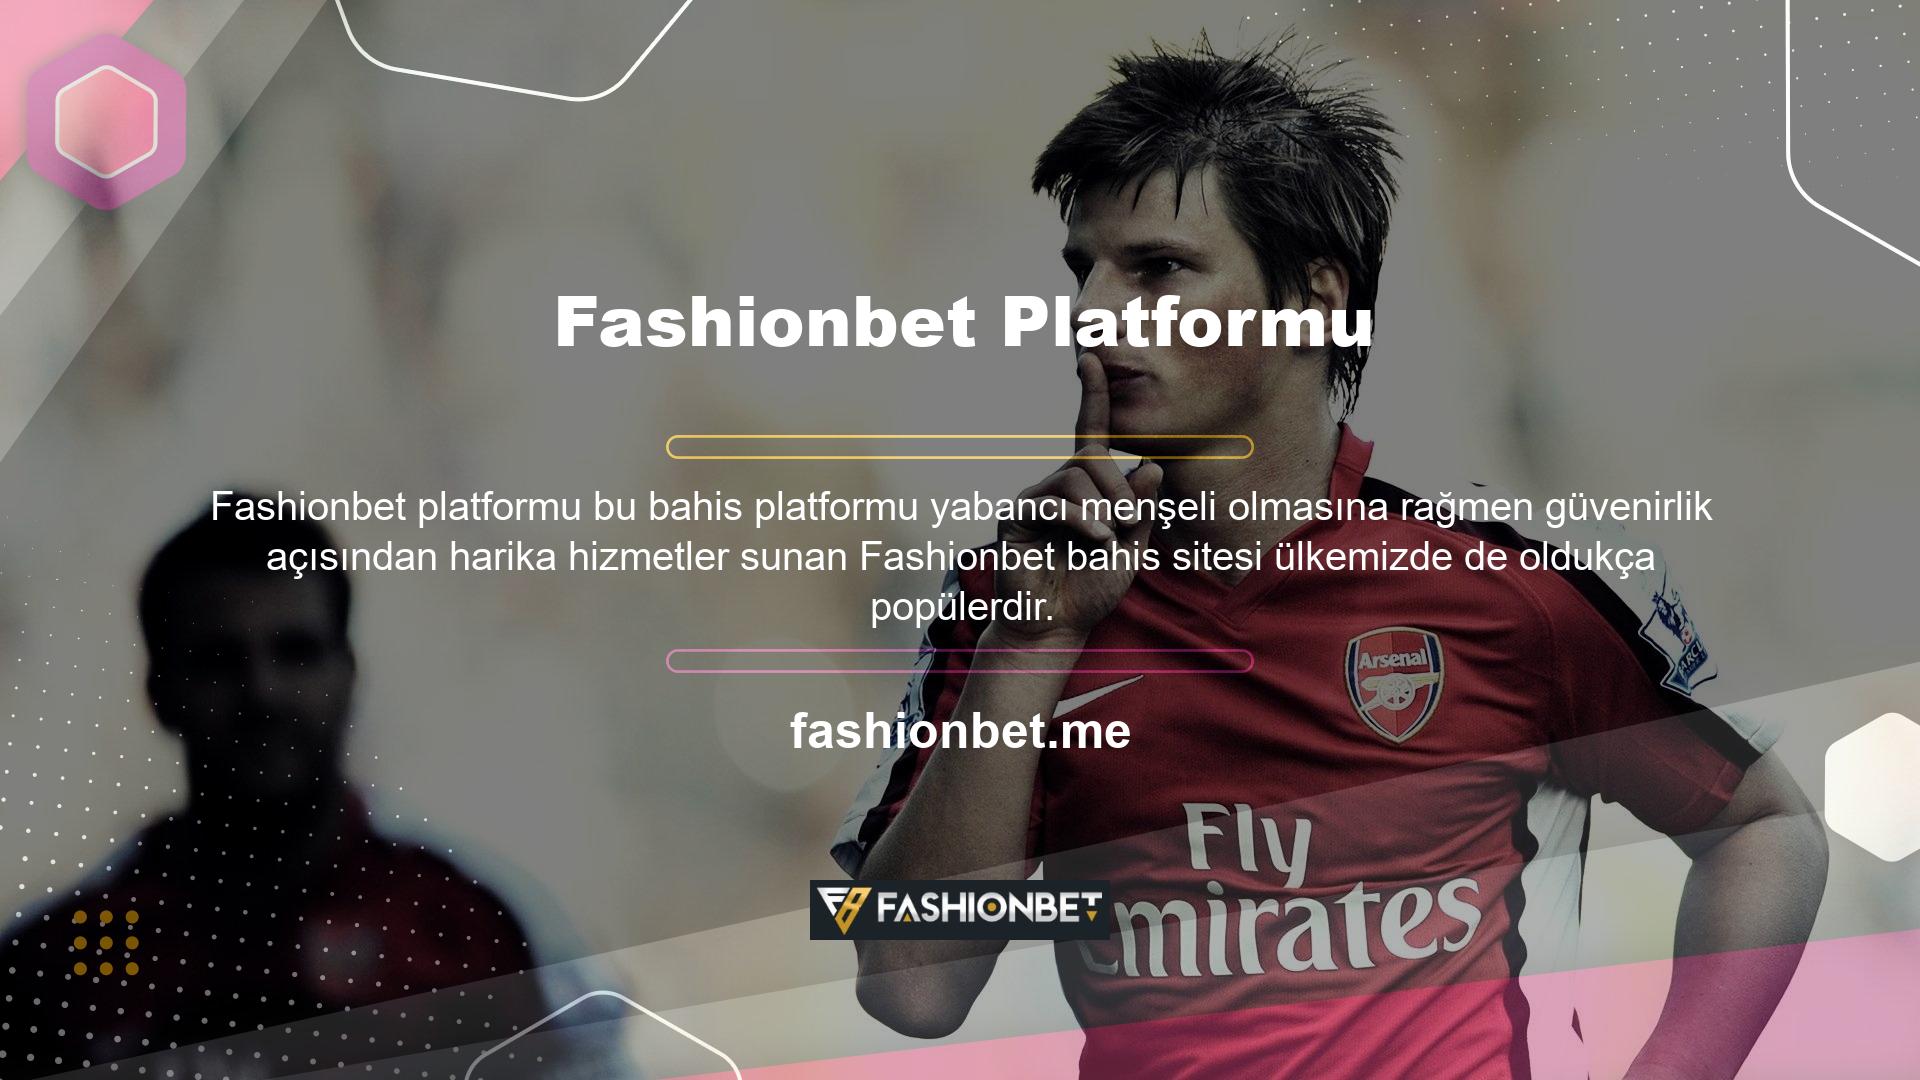 Fashionbet gazetesi platformu, tamamen ülkemiz kuralları çerçevesinde faaliyet göstermesi ve dünya çapında en çok satan lisansına sahip olmasıyla öne çıkmaktadır